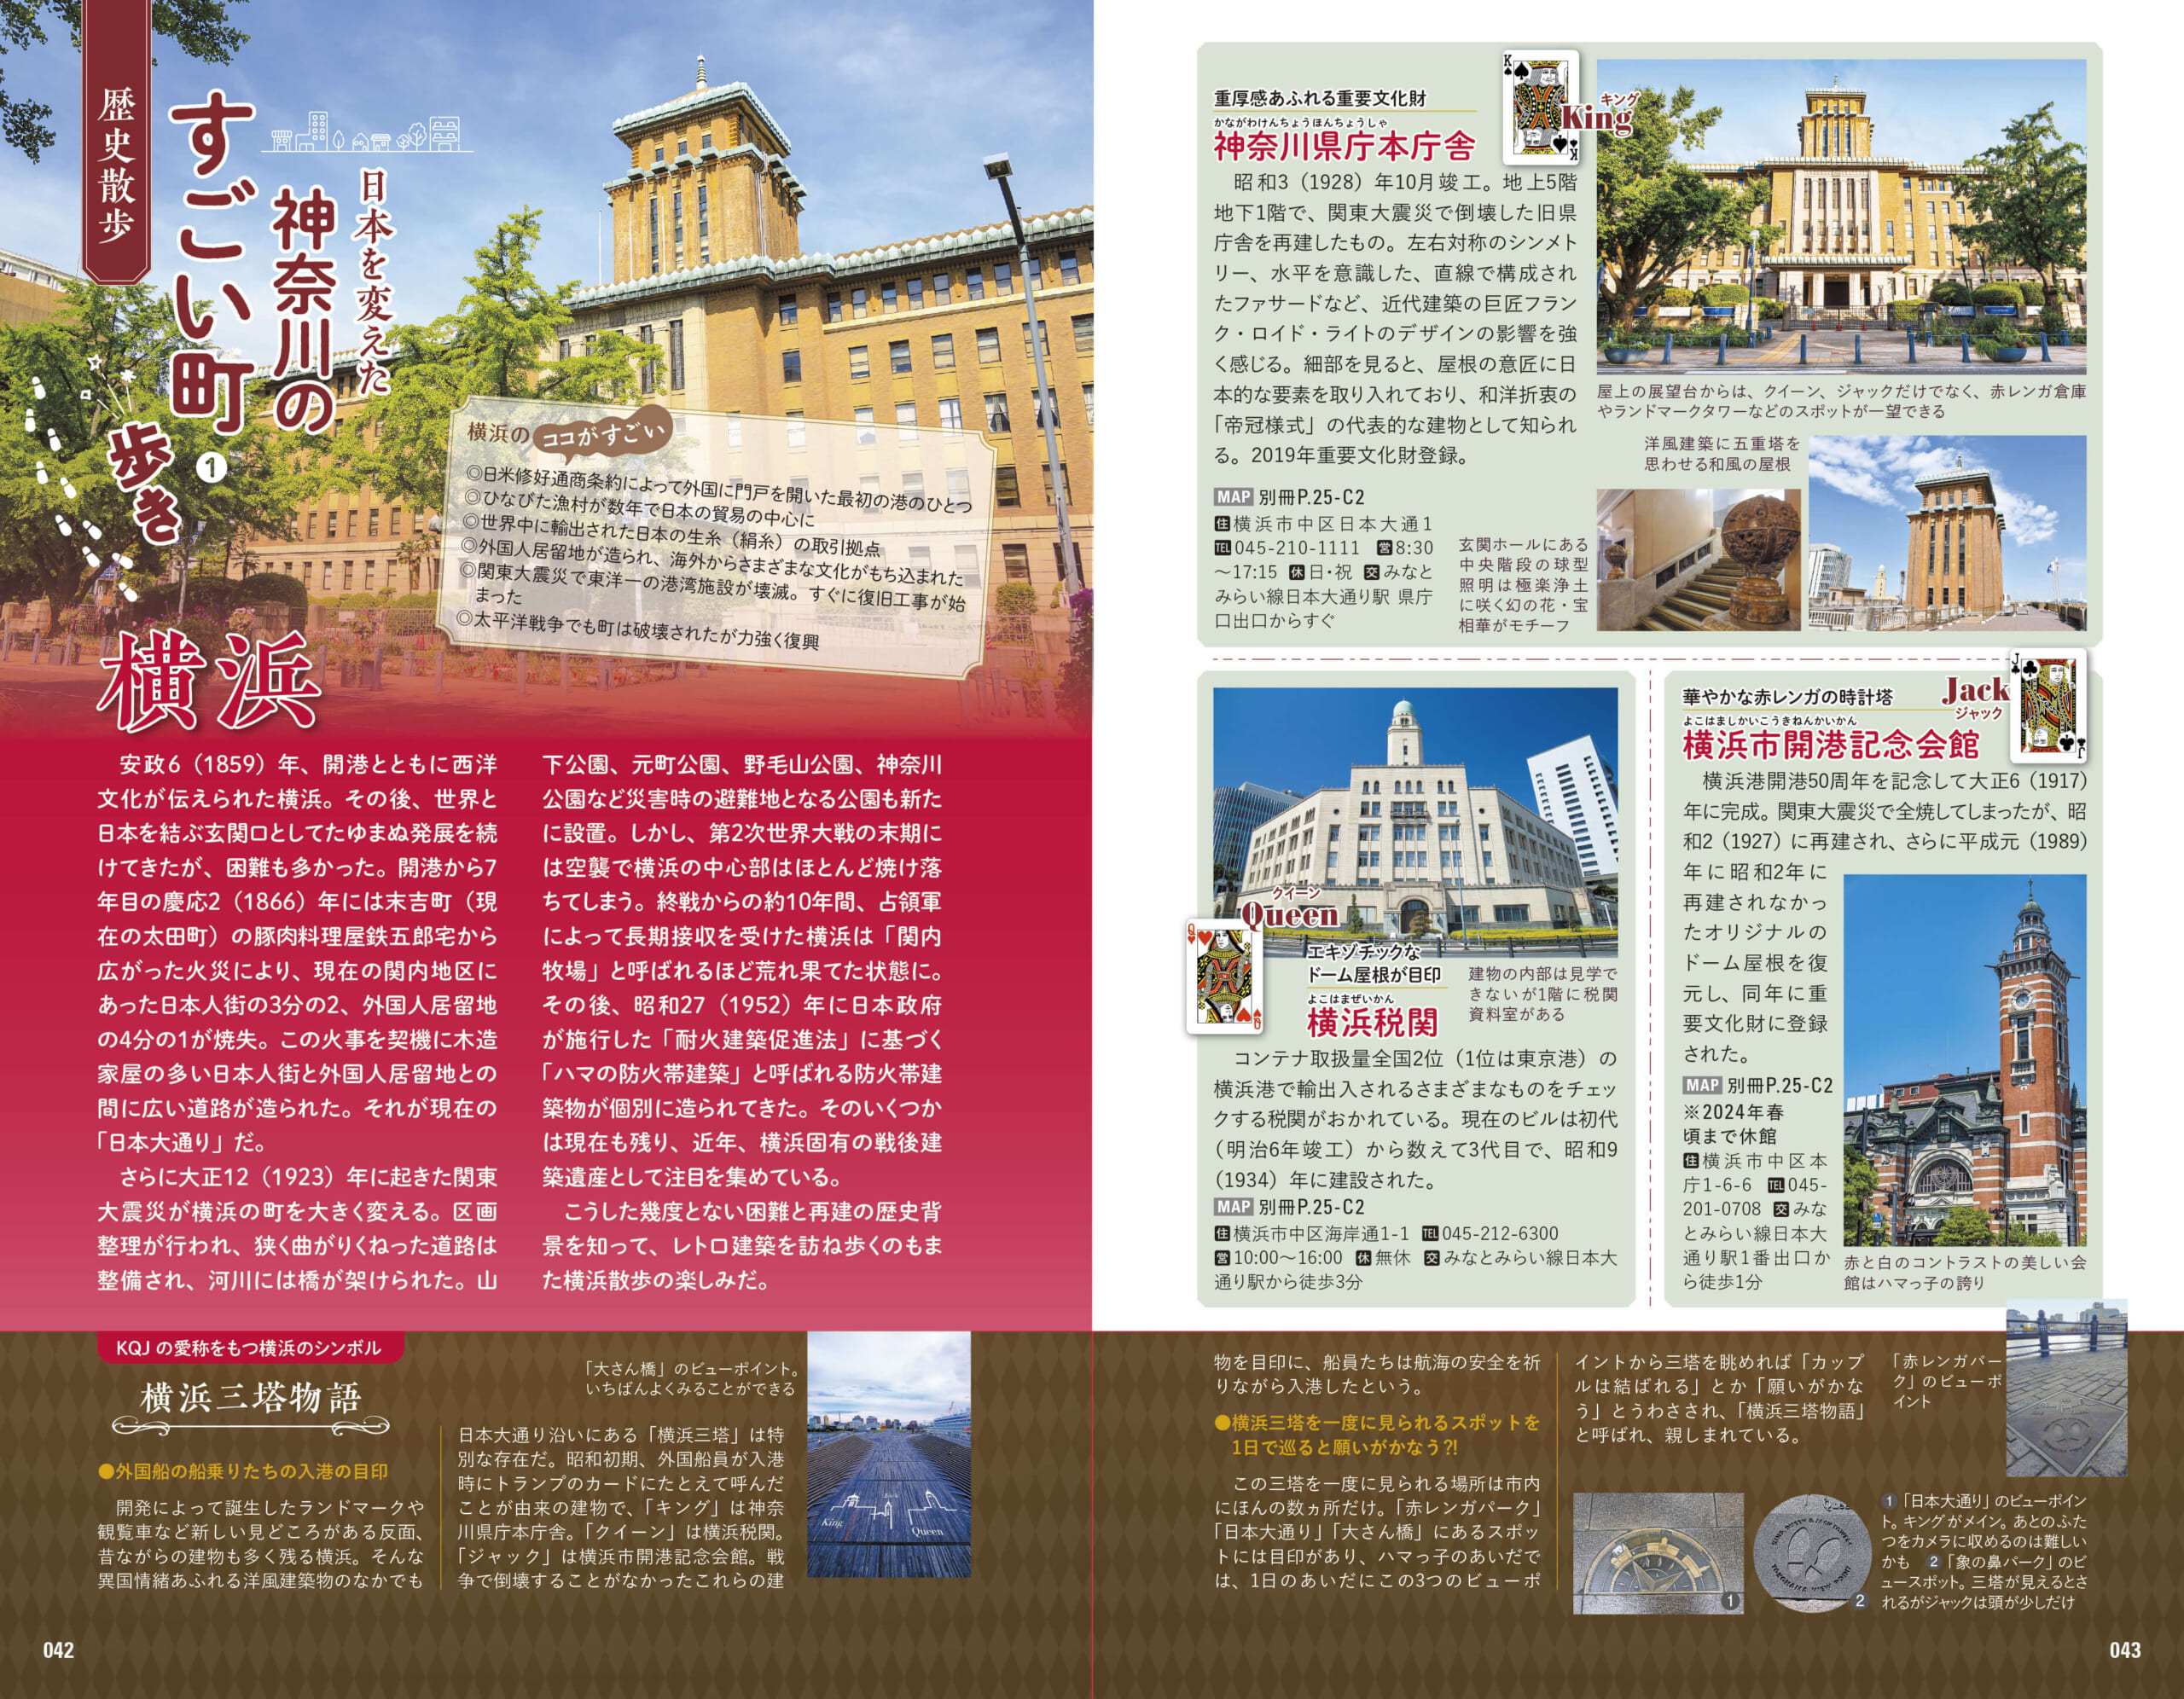 「異国情緒あふれるレトロ建築がそこかしこにある横浜。歴史的背景を知ると旅がもっと楽しくなる」紙面